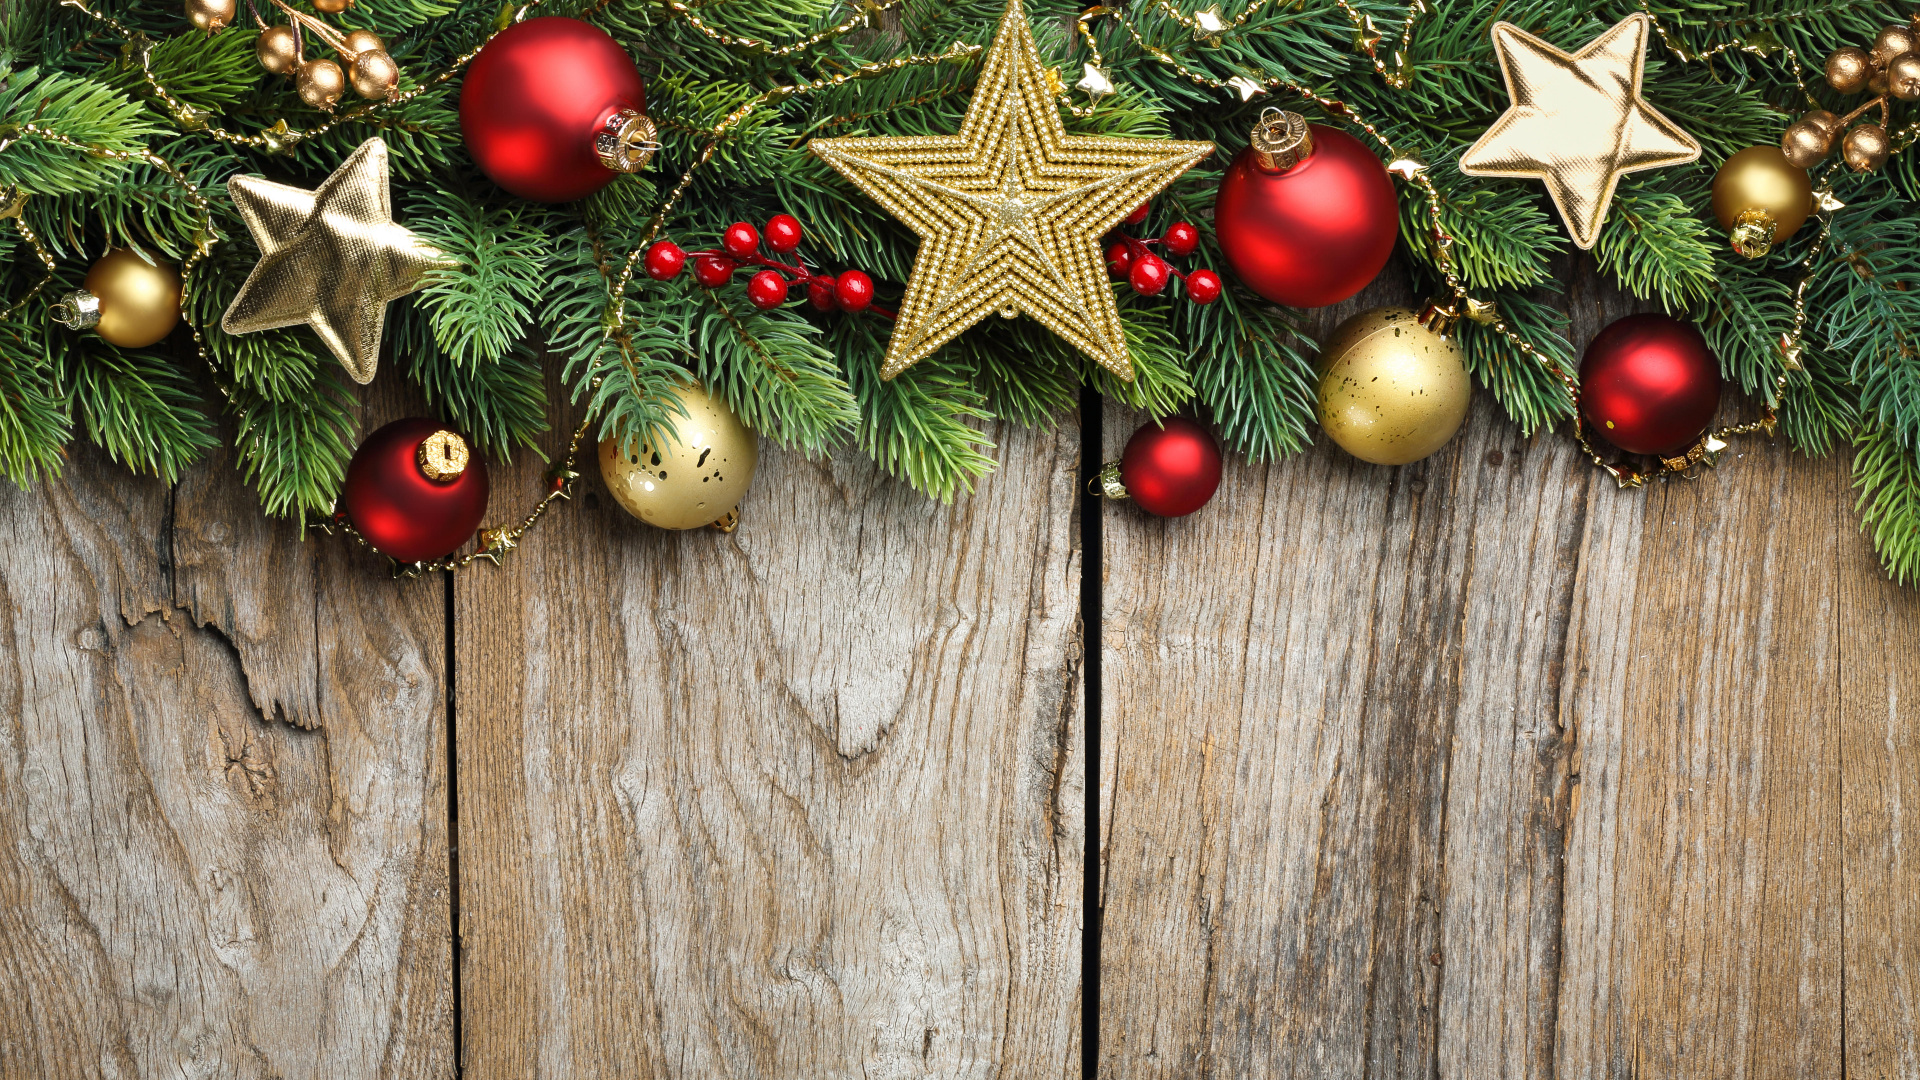 Weihnachten, Weihnachtsdekoration, Christmas Ornament, Weihnachtsbaum, Branch. Wallpaper in 1920x1080 Resolution